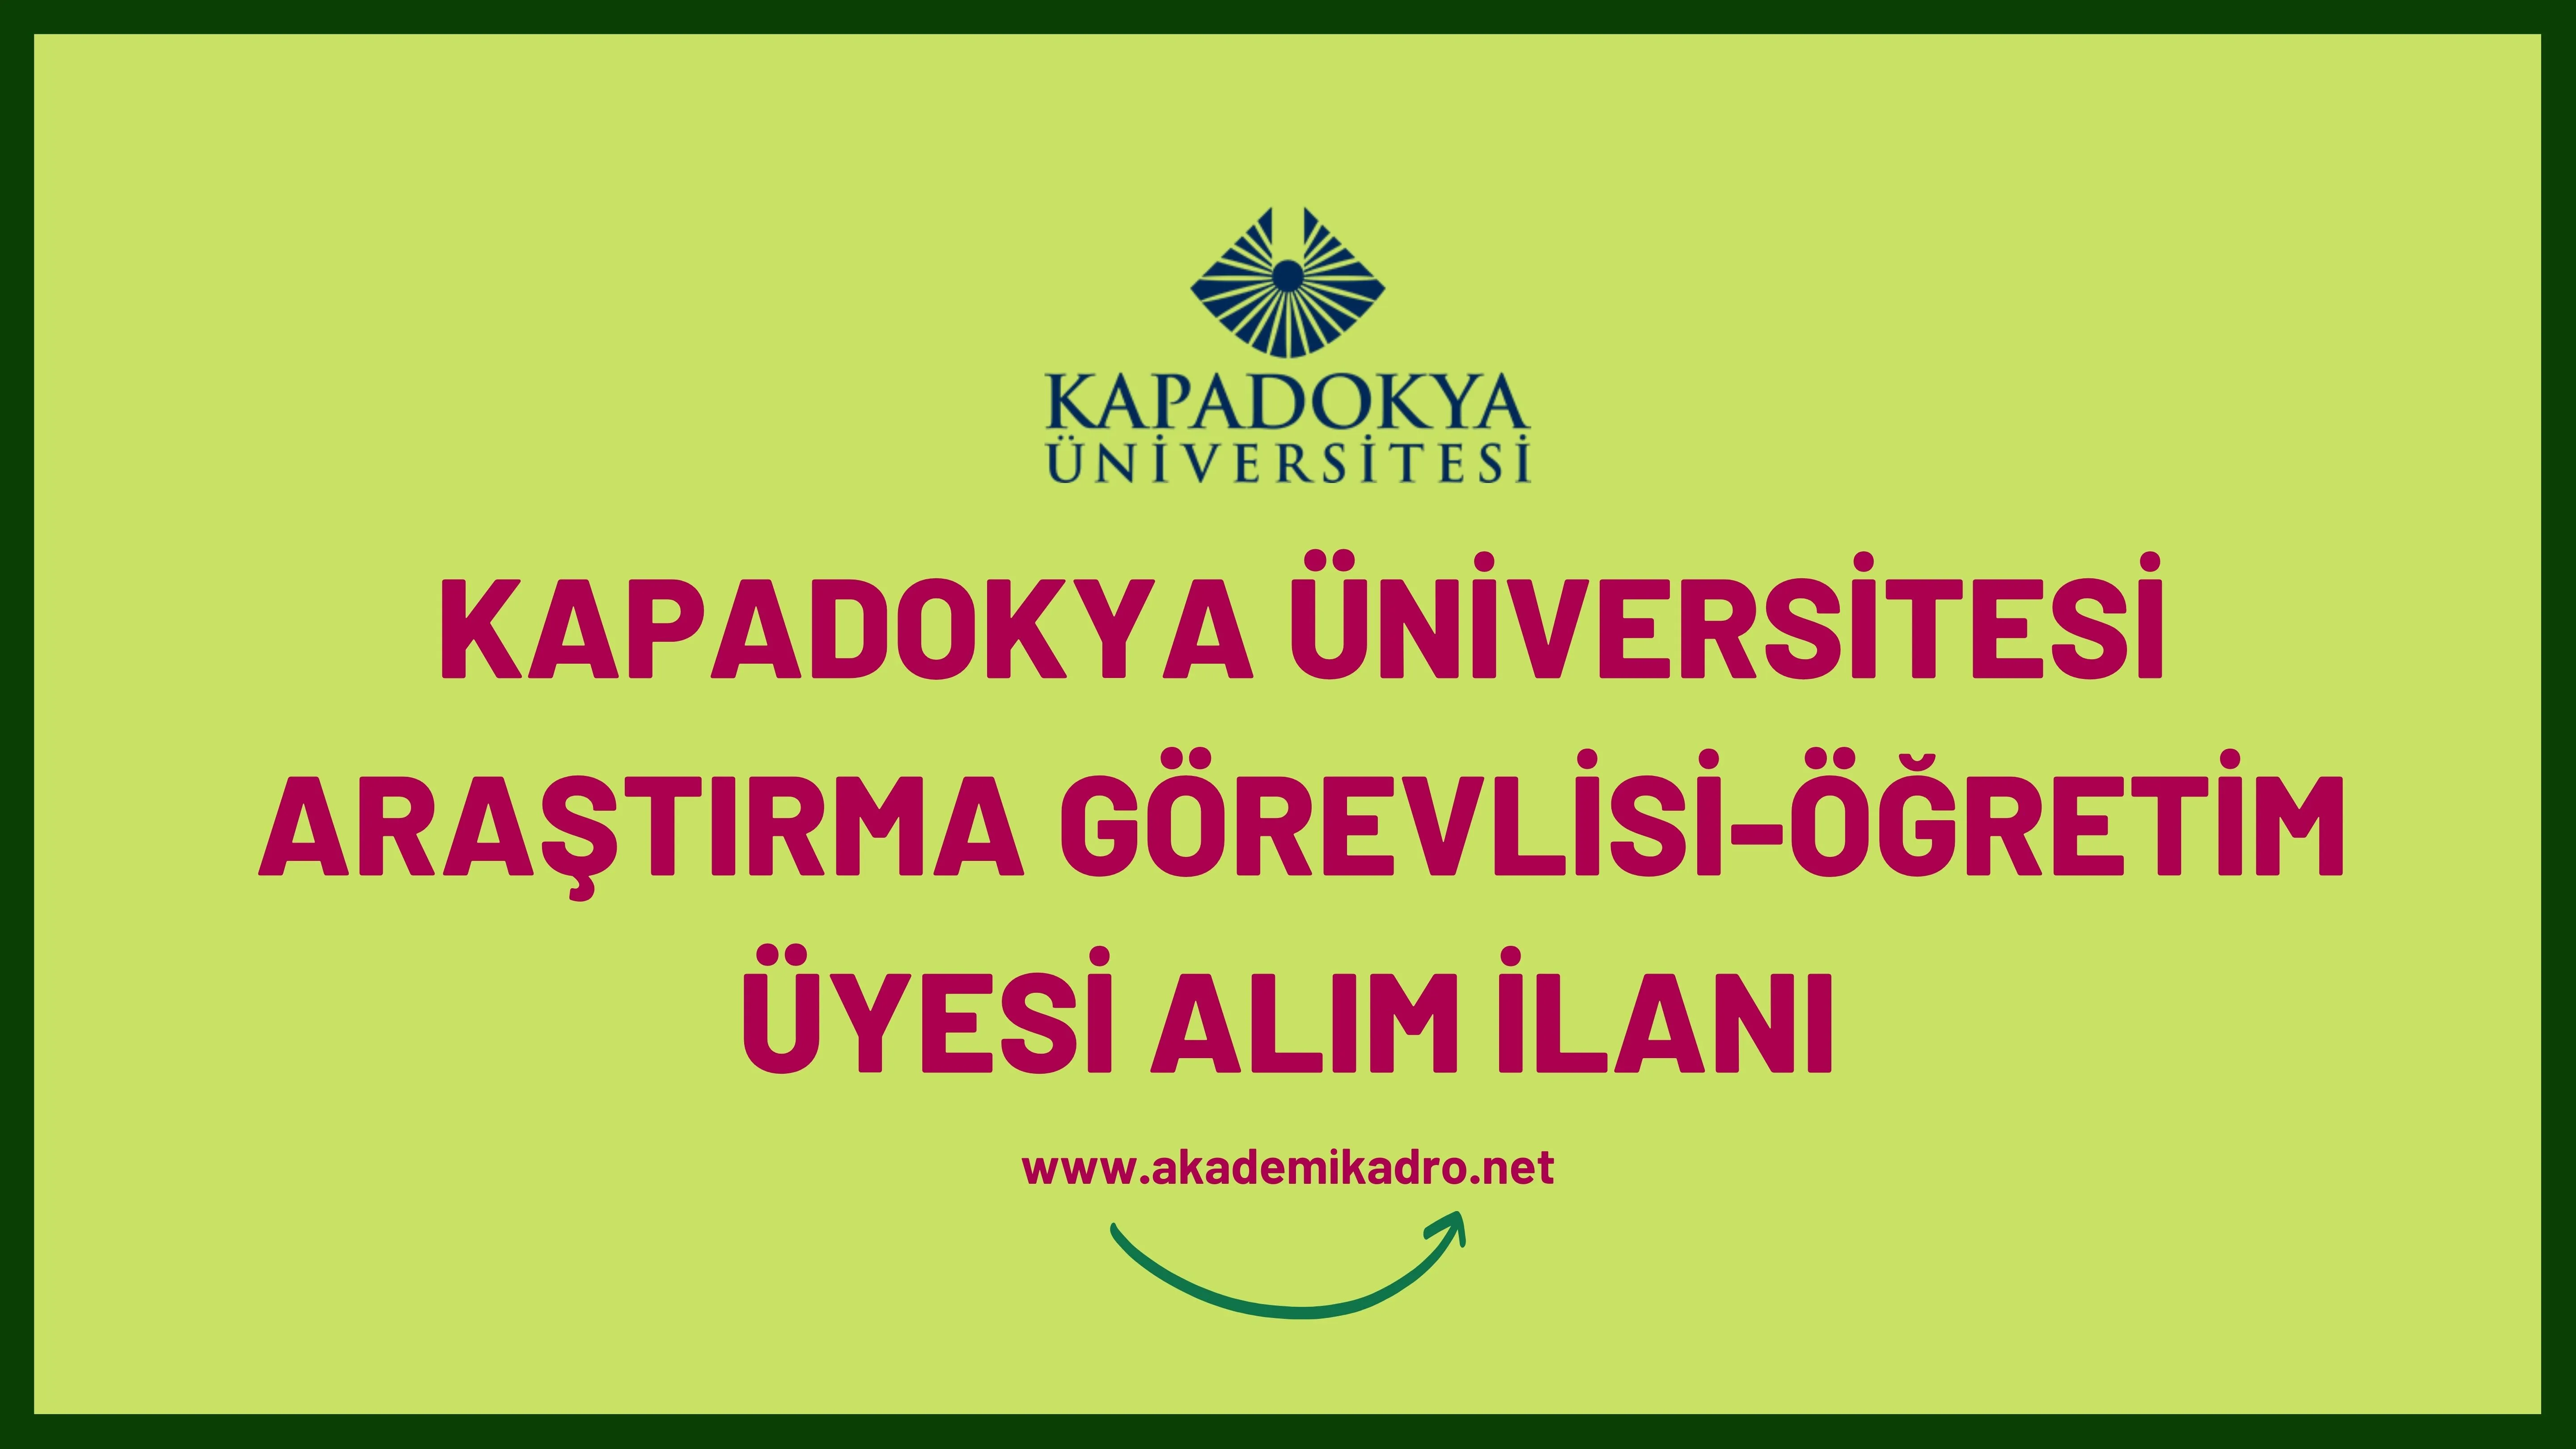 Kapadokya Üniversitesi Araştırma görevlisi ve 3 öğretim üyesi alacak.